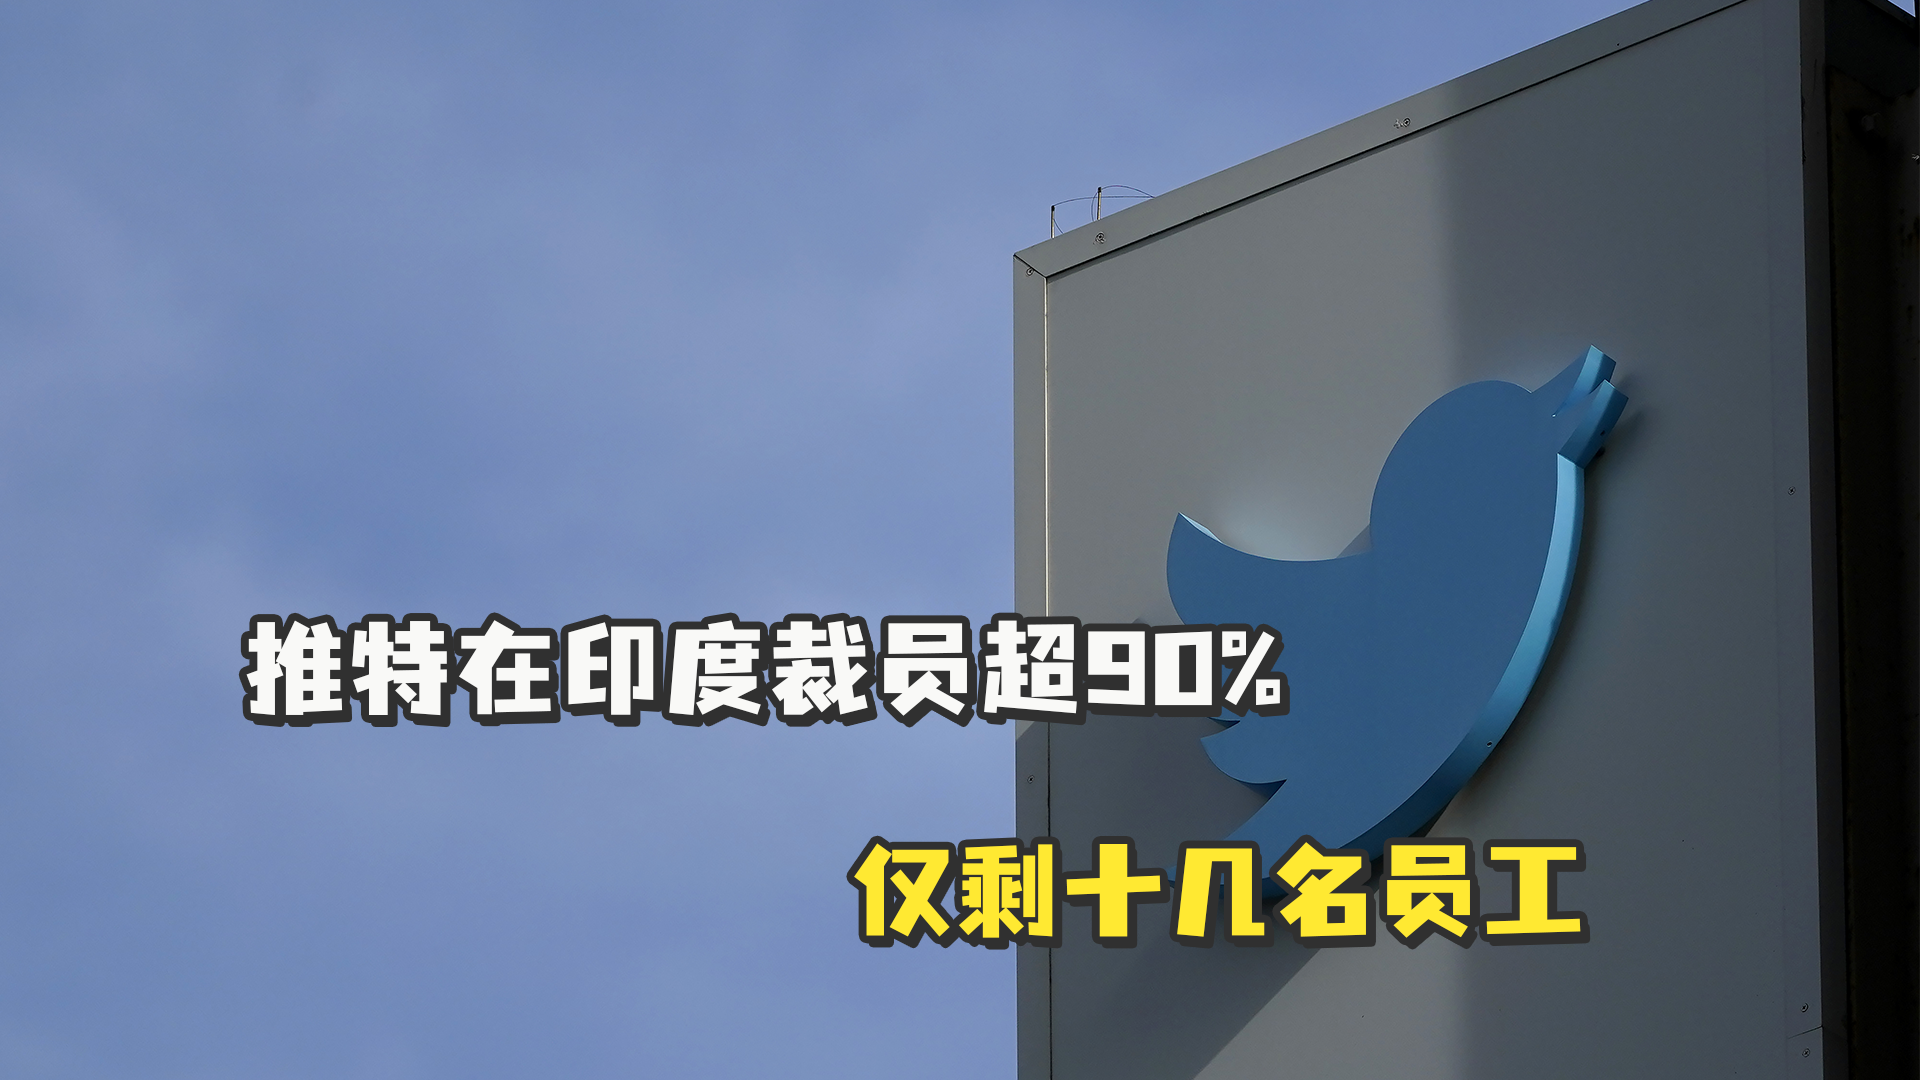 美媒称马斯克收购推特后将裁员75%，推特慌忙否认